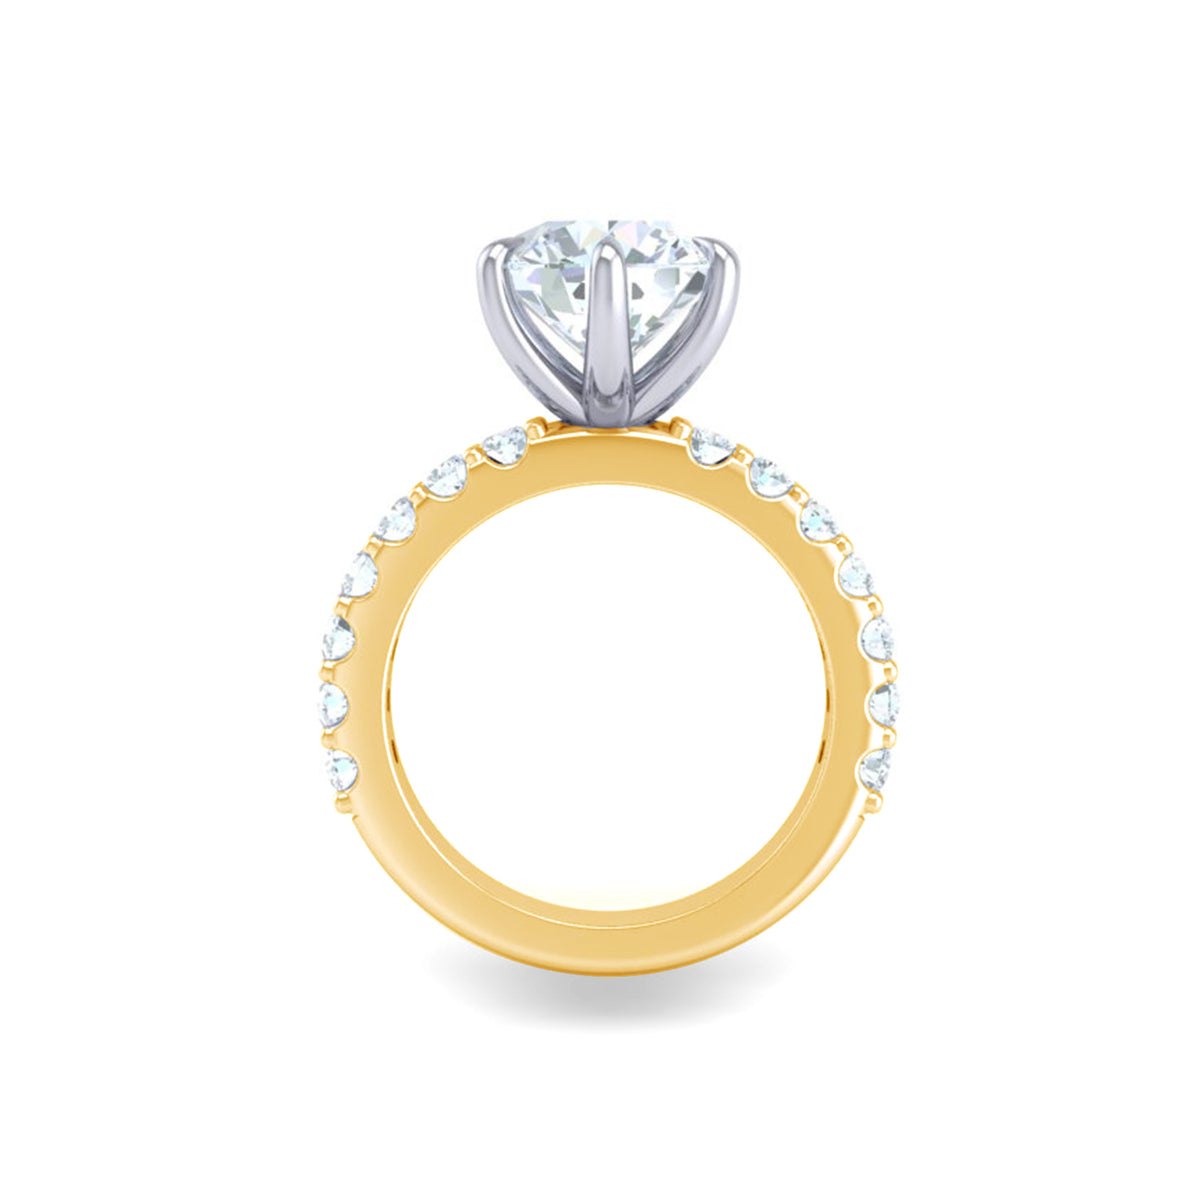 Artemis Round Engagement Ring